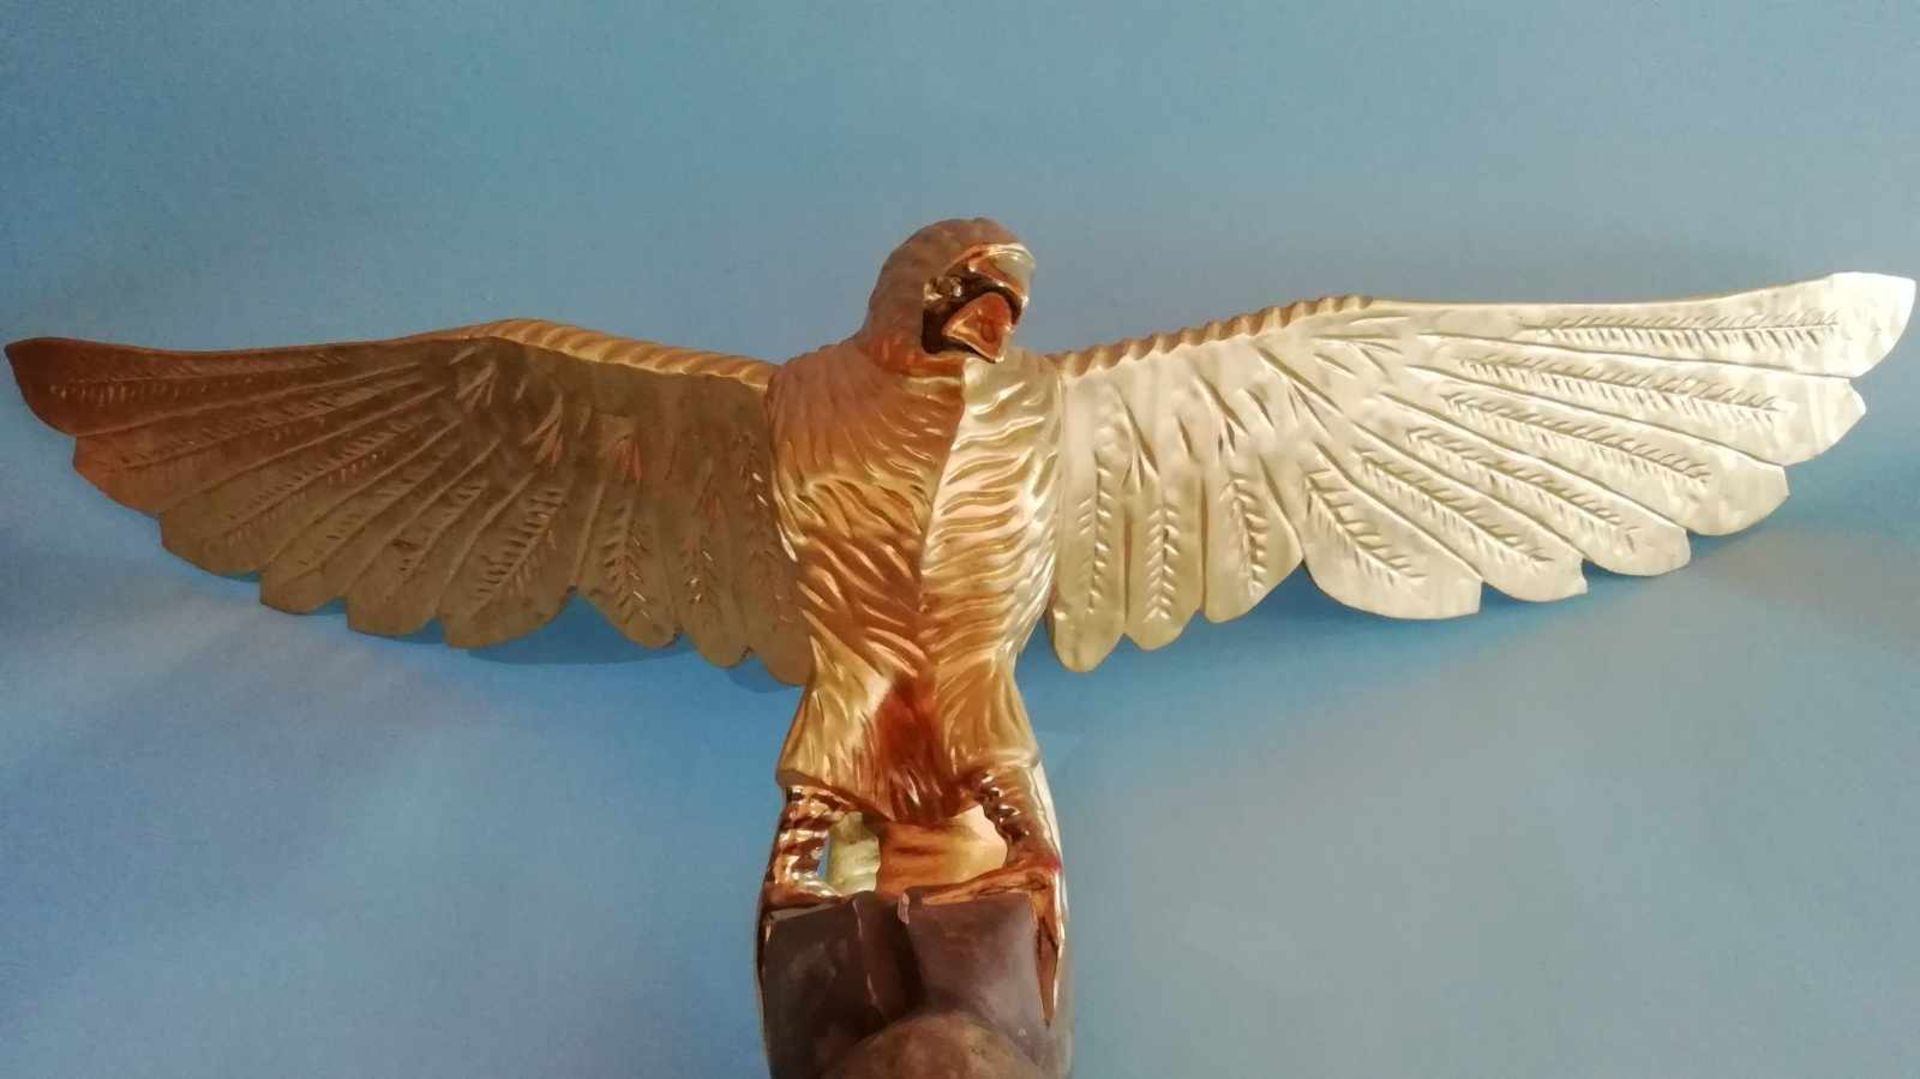 Tierfigur AdlerAufsatz für Kasten, Holz, geschnitzt, vergoldet, kleine Farbfehlstellen, Breite 110